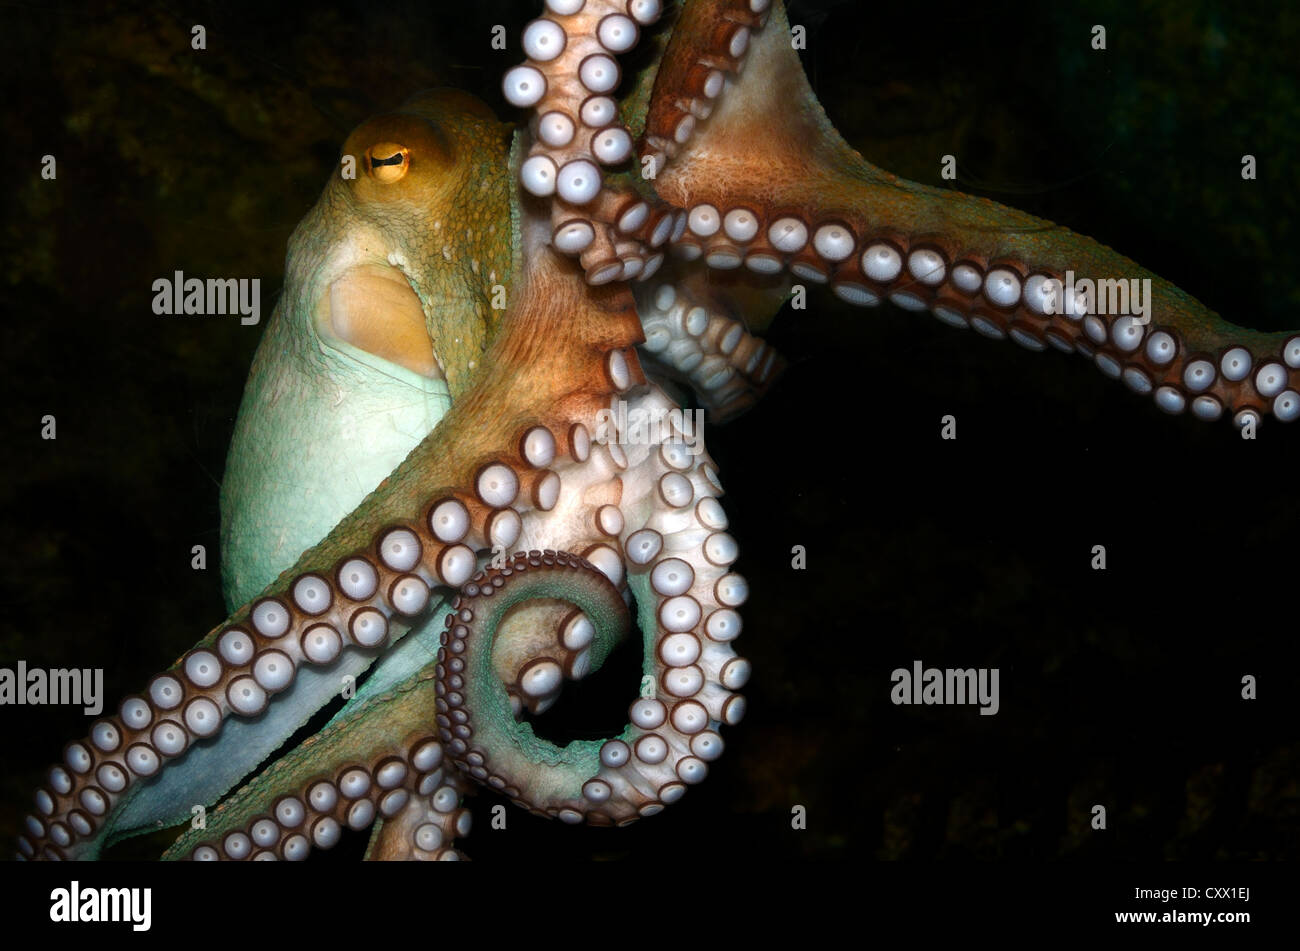 Common Octopus, Octopus vulgaris Stock Photo